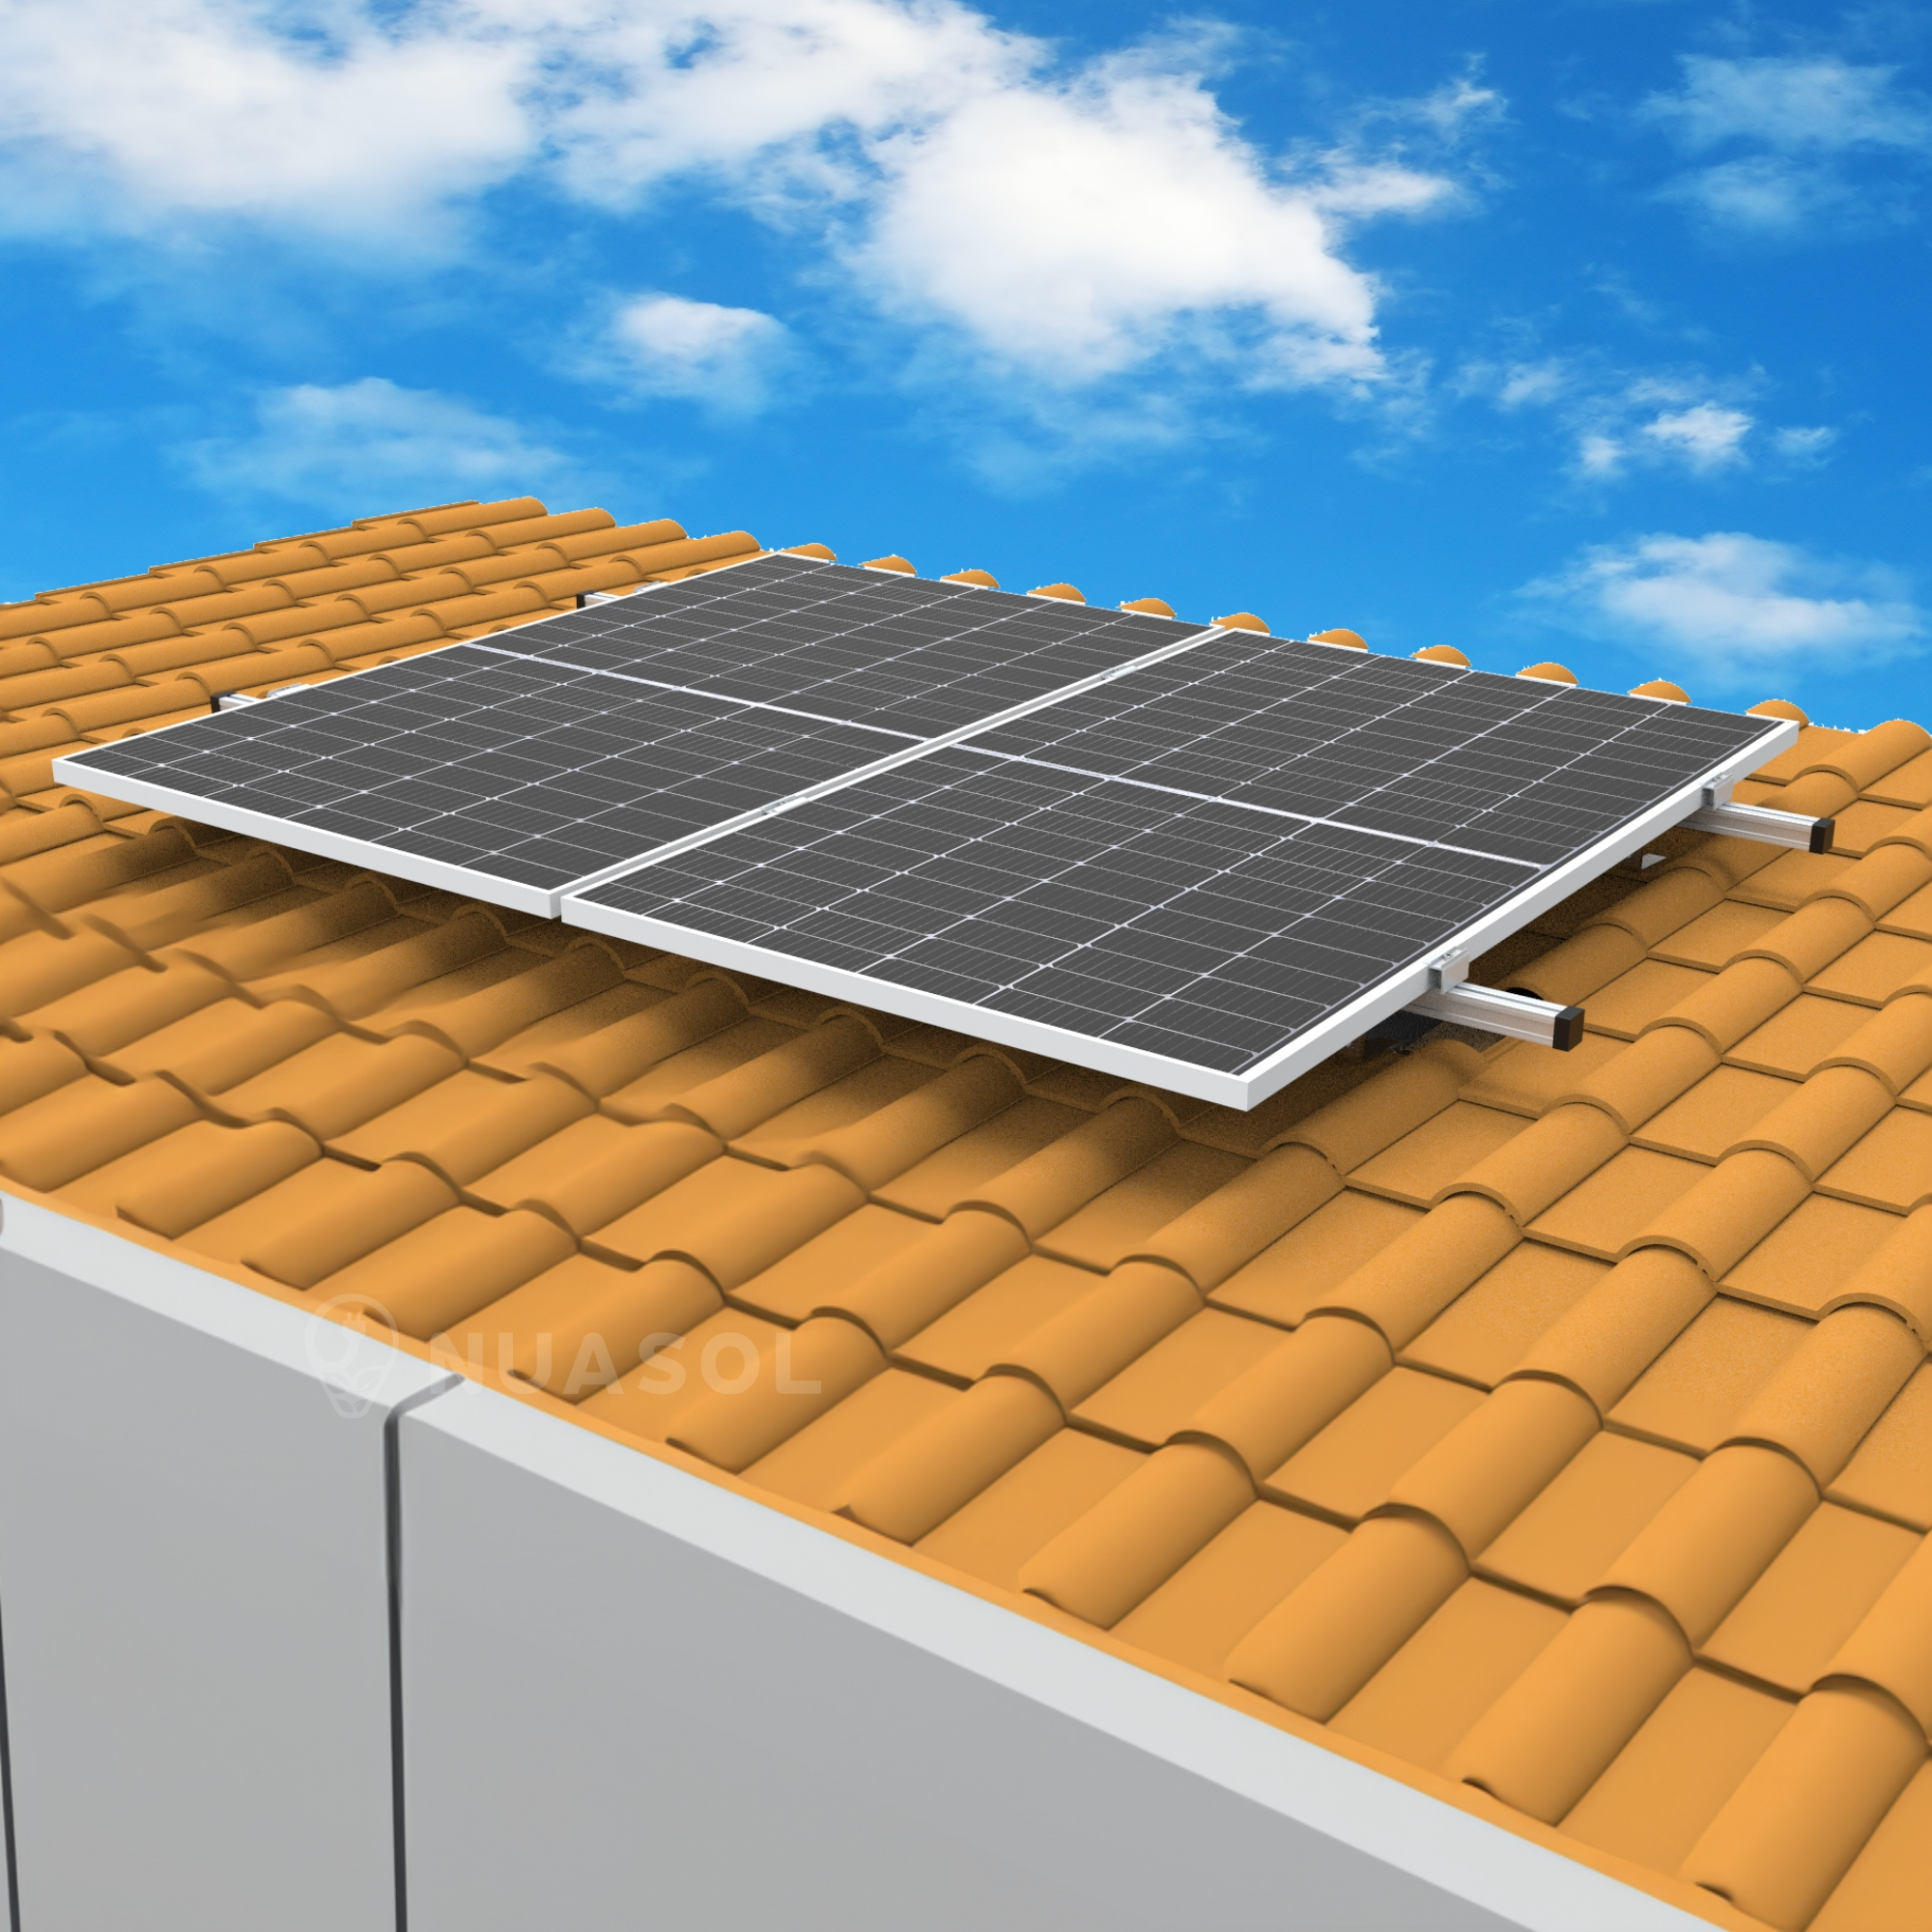 Solarmodule silber für Dachmontage-Set 2 Halterung, NUASOL